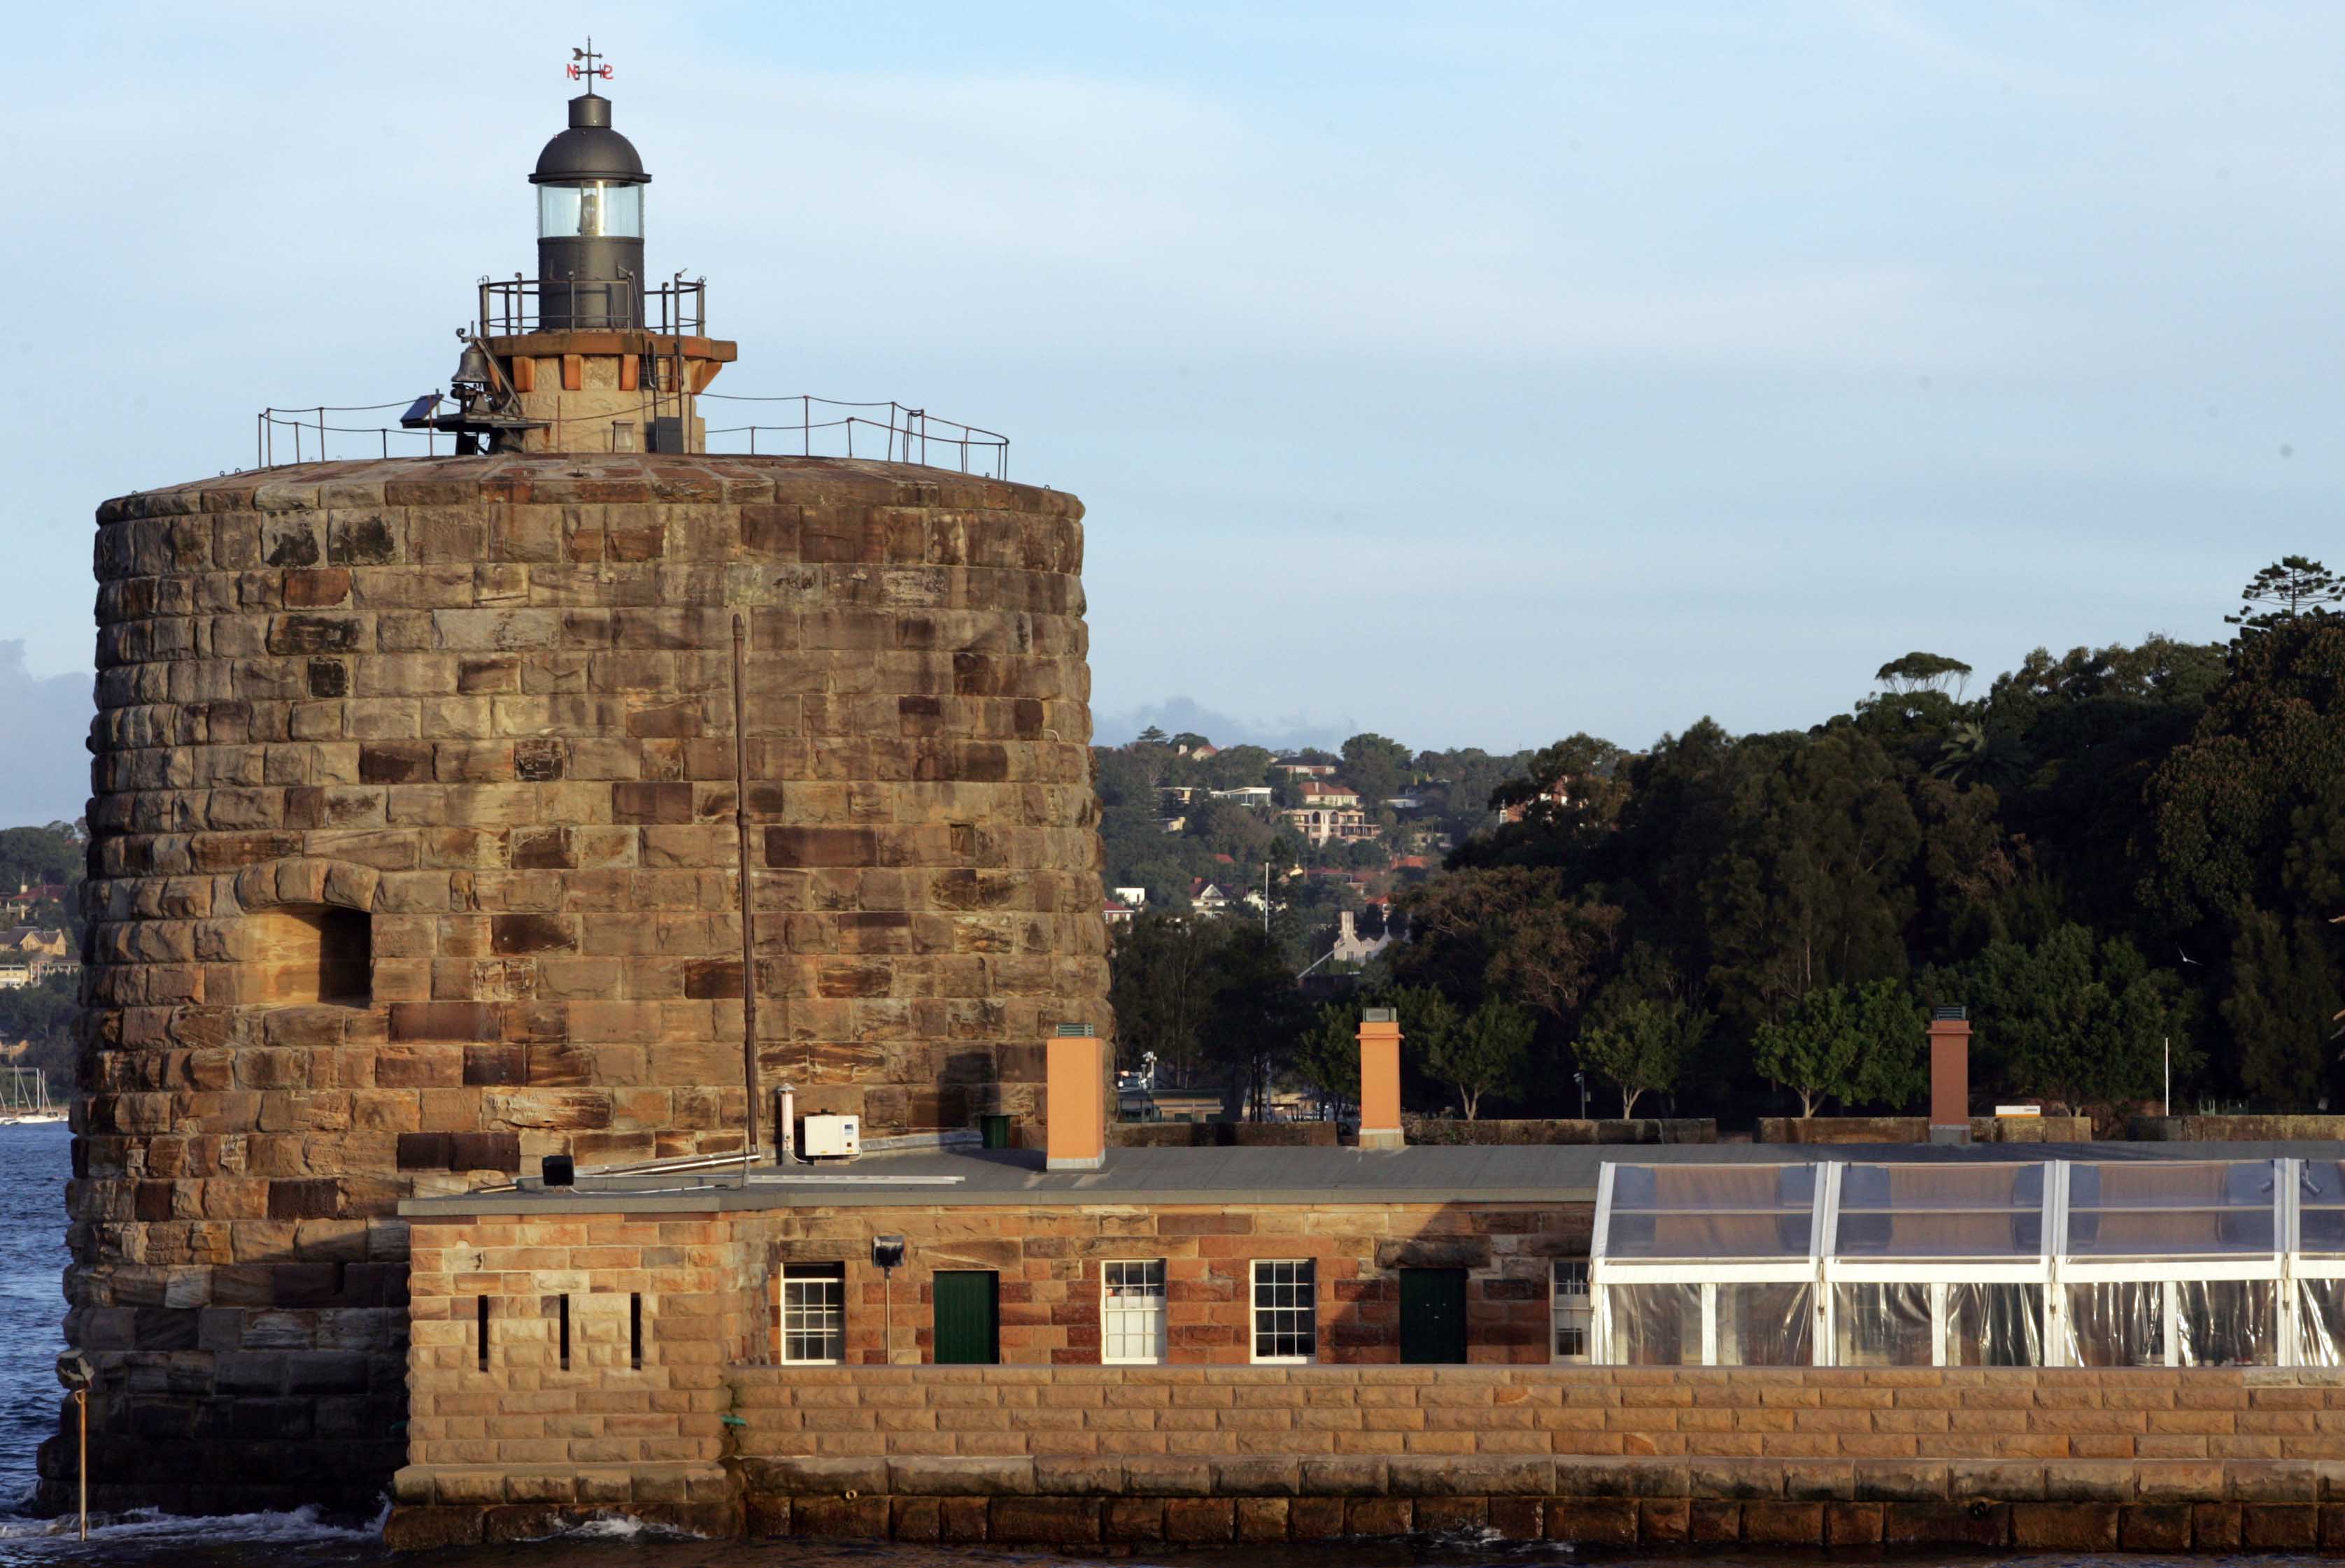 Pháo đài Denison bên bến cảng Sydney, nơi còn lưu giữ rất nhiều khẩu thần công từ những thế kỷ trước là điểm đến hoàn hảo cho du khách ưa khám phá, nghiên cứu lịch sử.